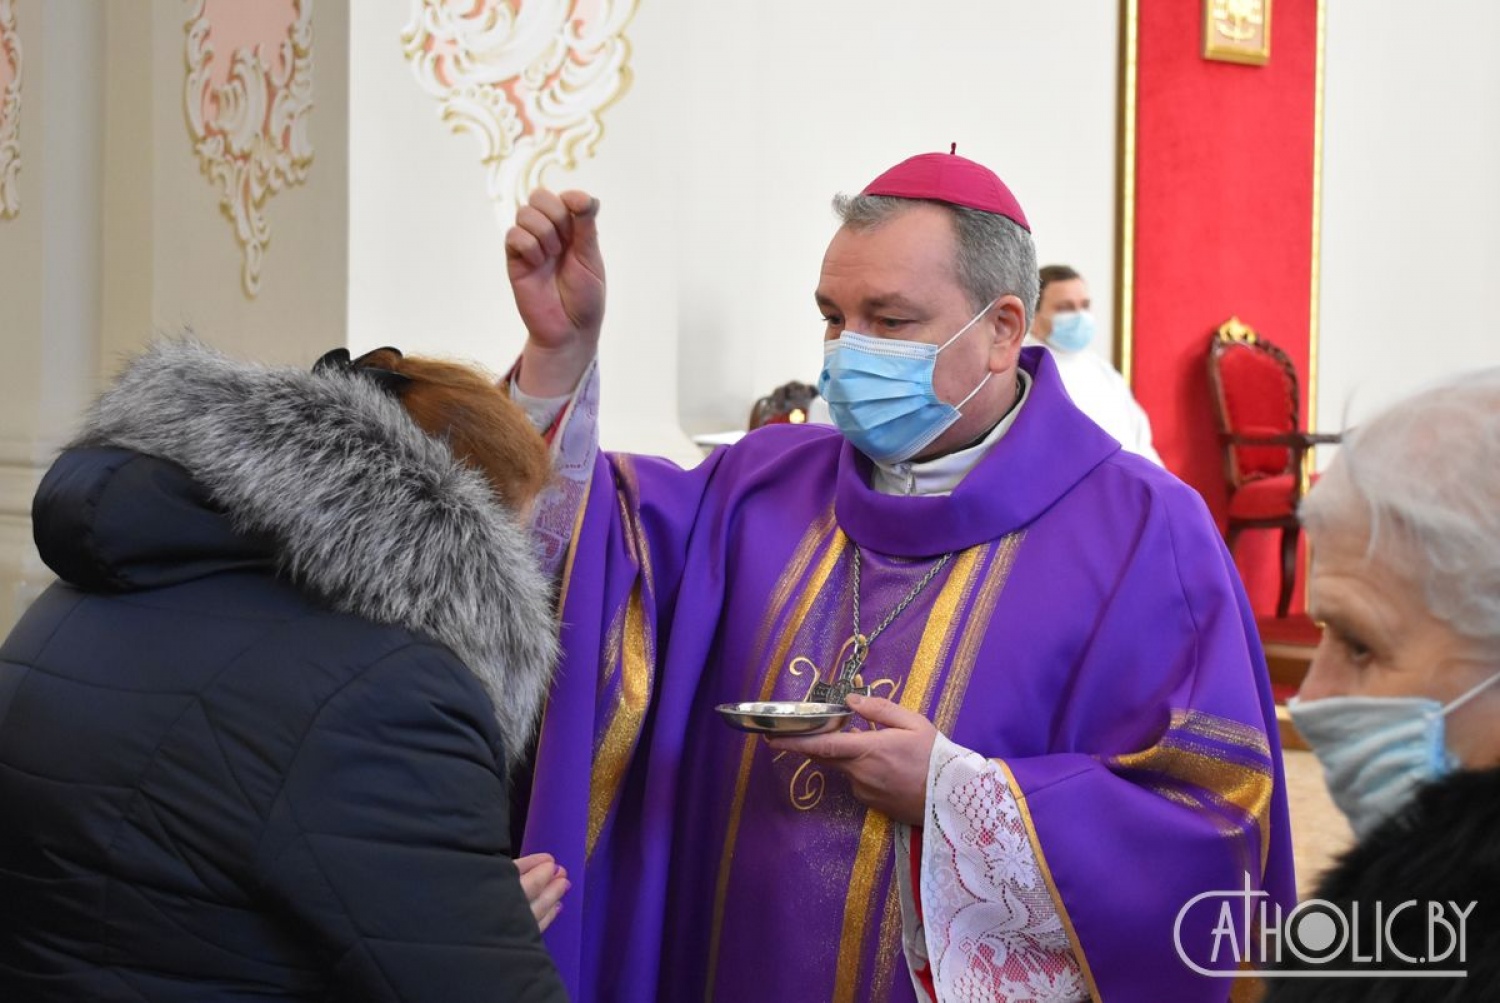 Епископ Кособуцкий поздравил православных с началом Великого поста и попросил прощения